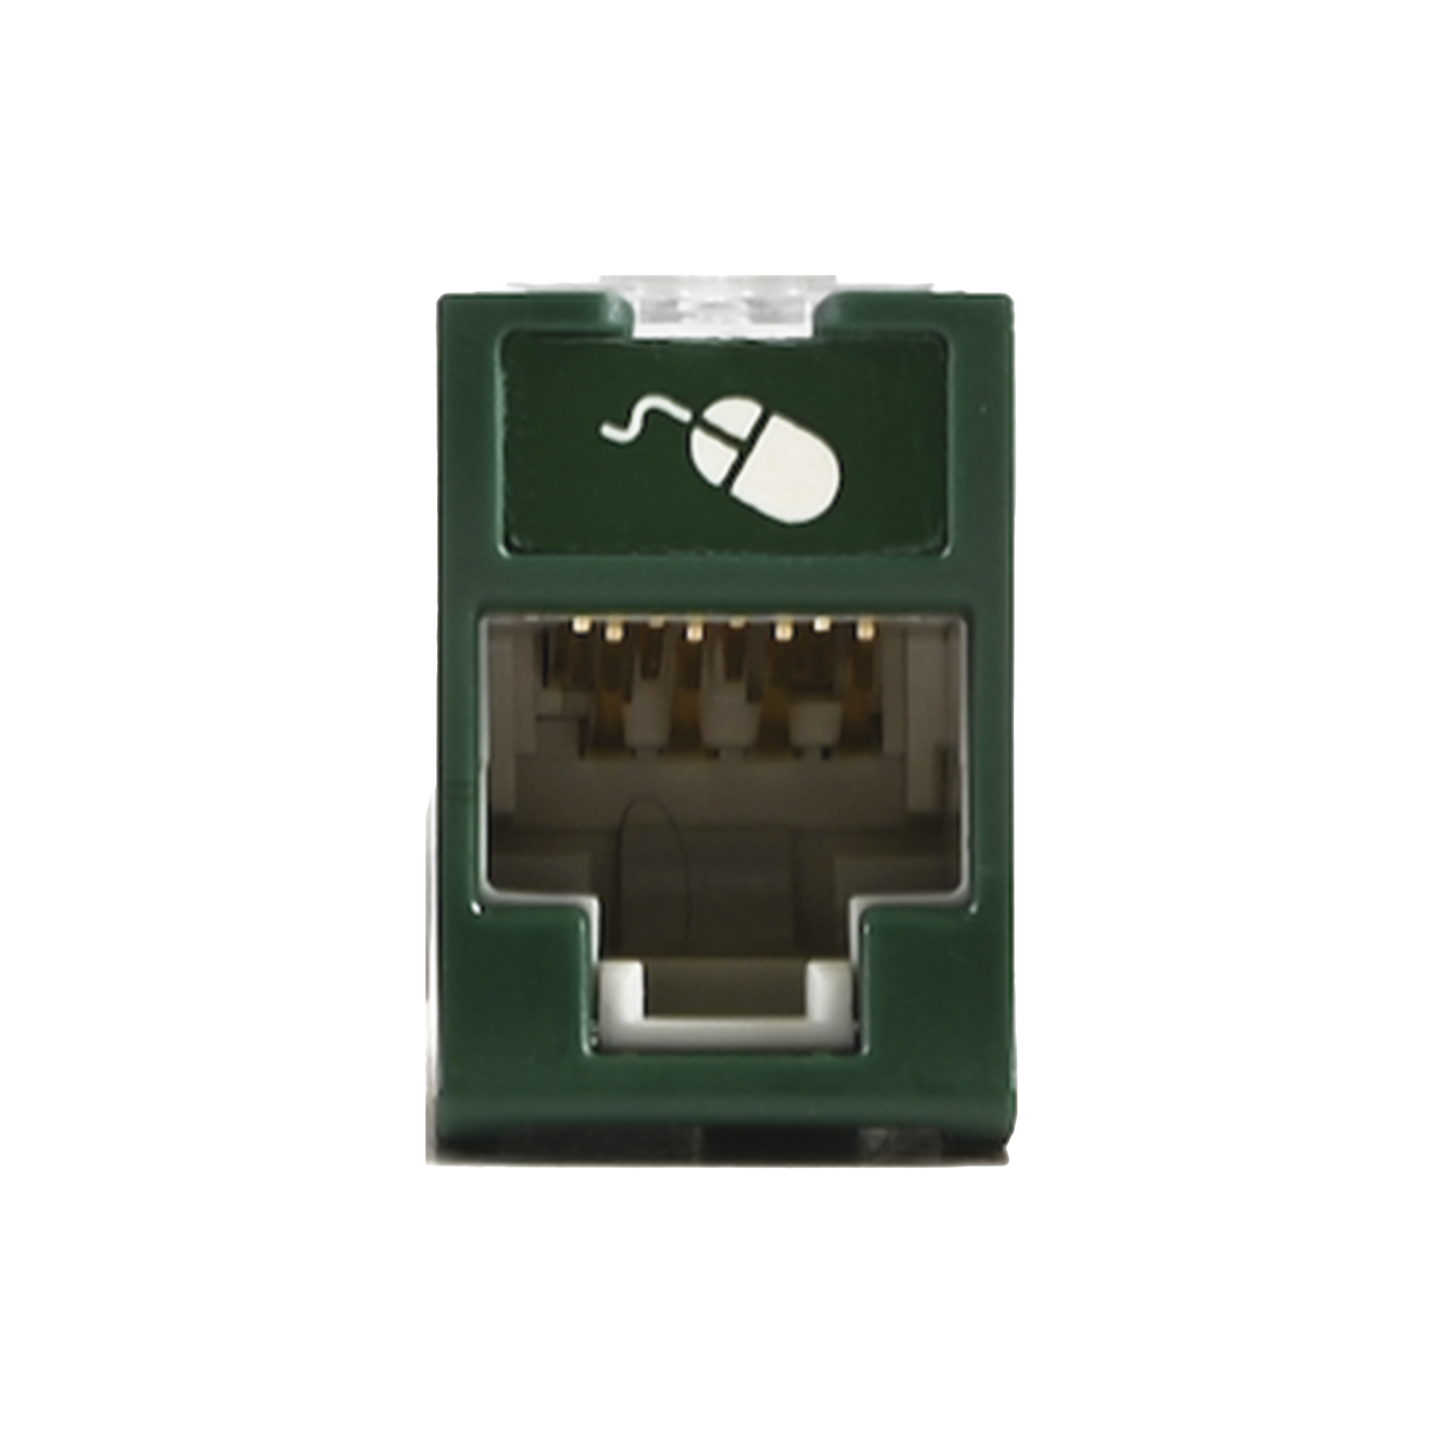 Jack UltraMAX Cat6A, UTP, Montaje híbrido en Placa de Pared (Plano y Angulado), Color Verde, Punch Down